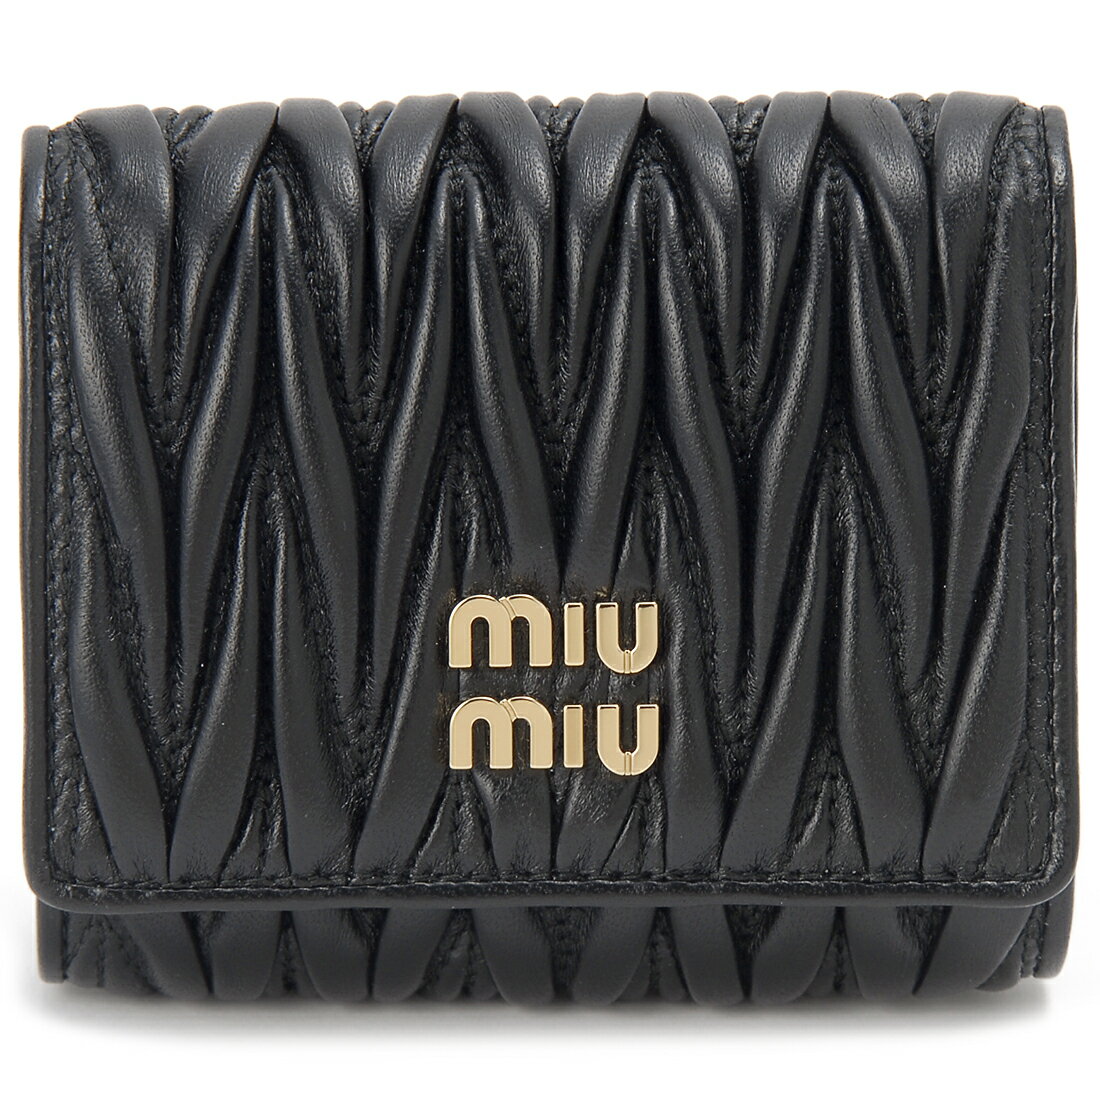 MIU MIU ミュウミュウ 三つ折り財布 レディース ブラック 5MH033 2FPP F0002 TRI FOLD WALLET